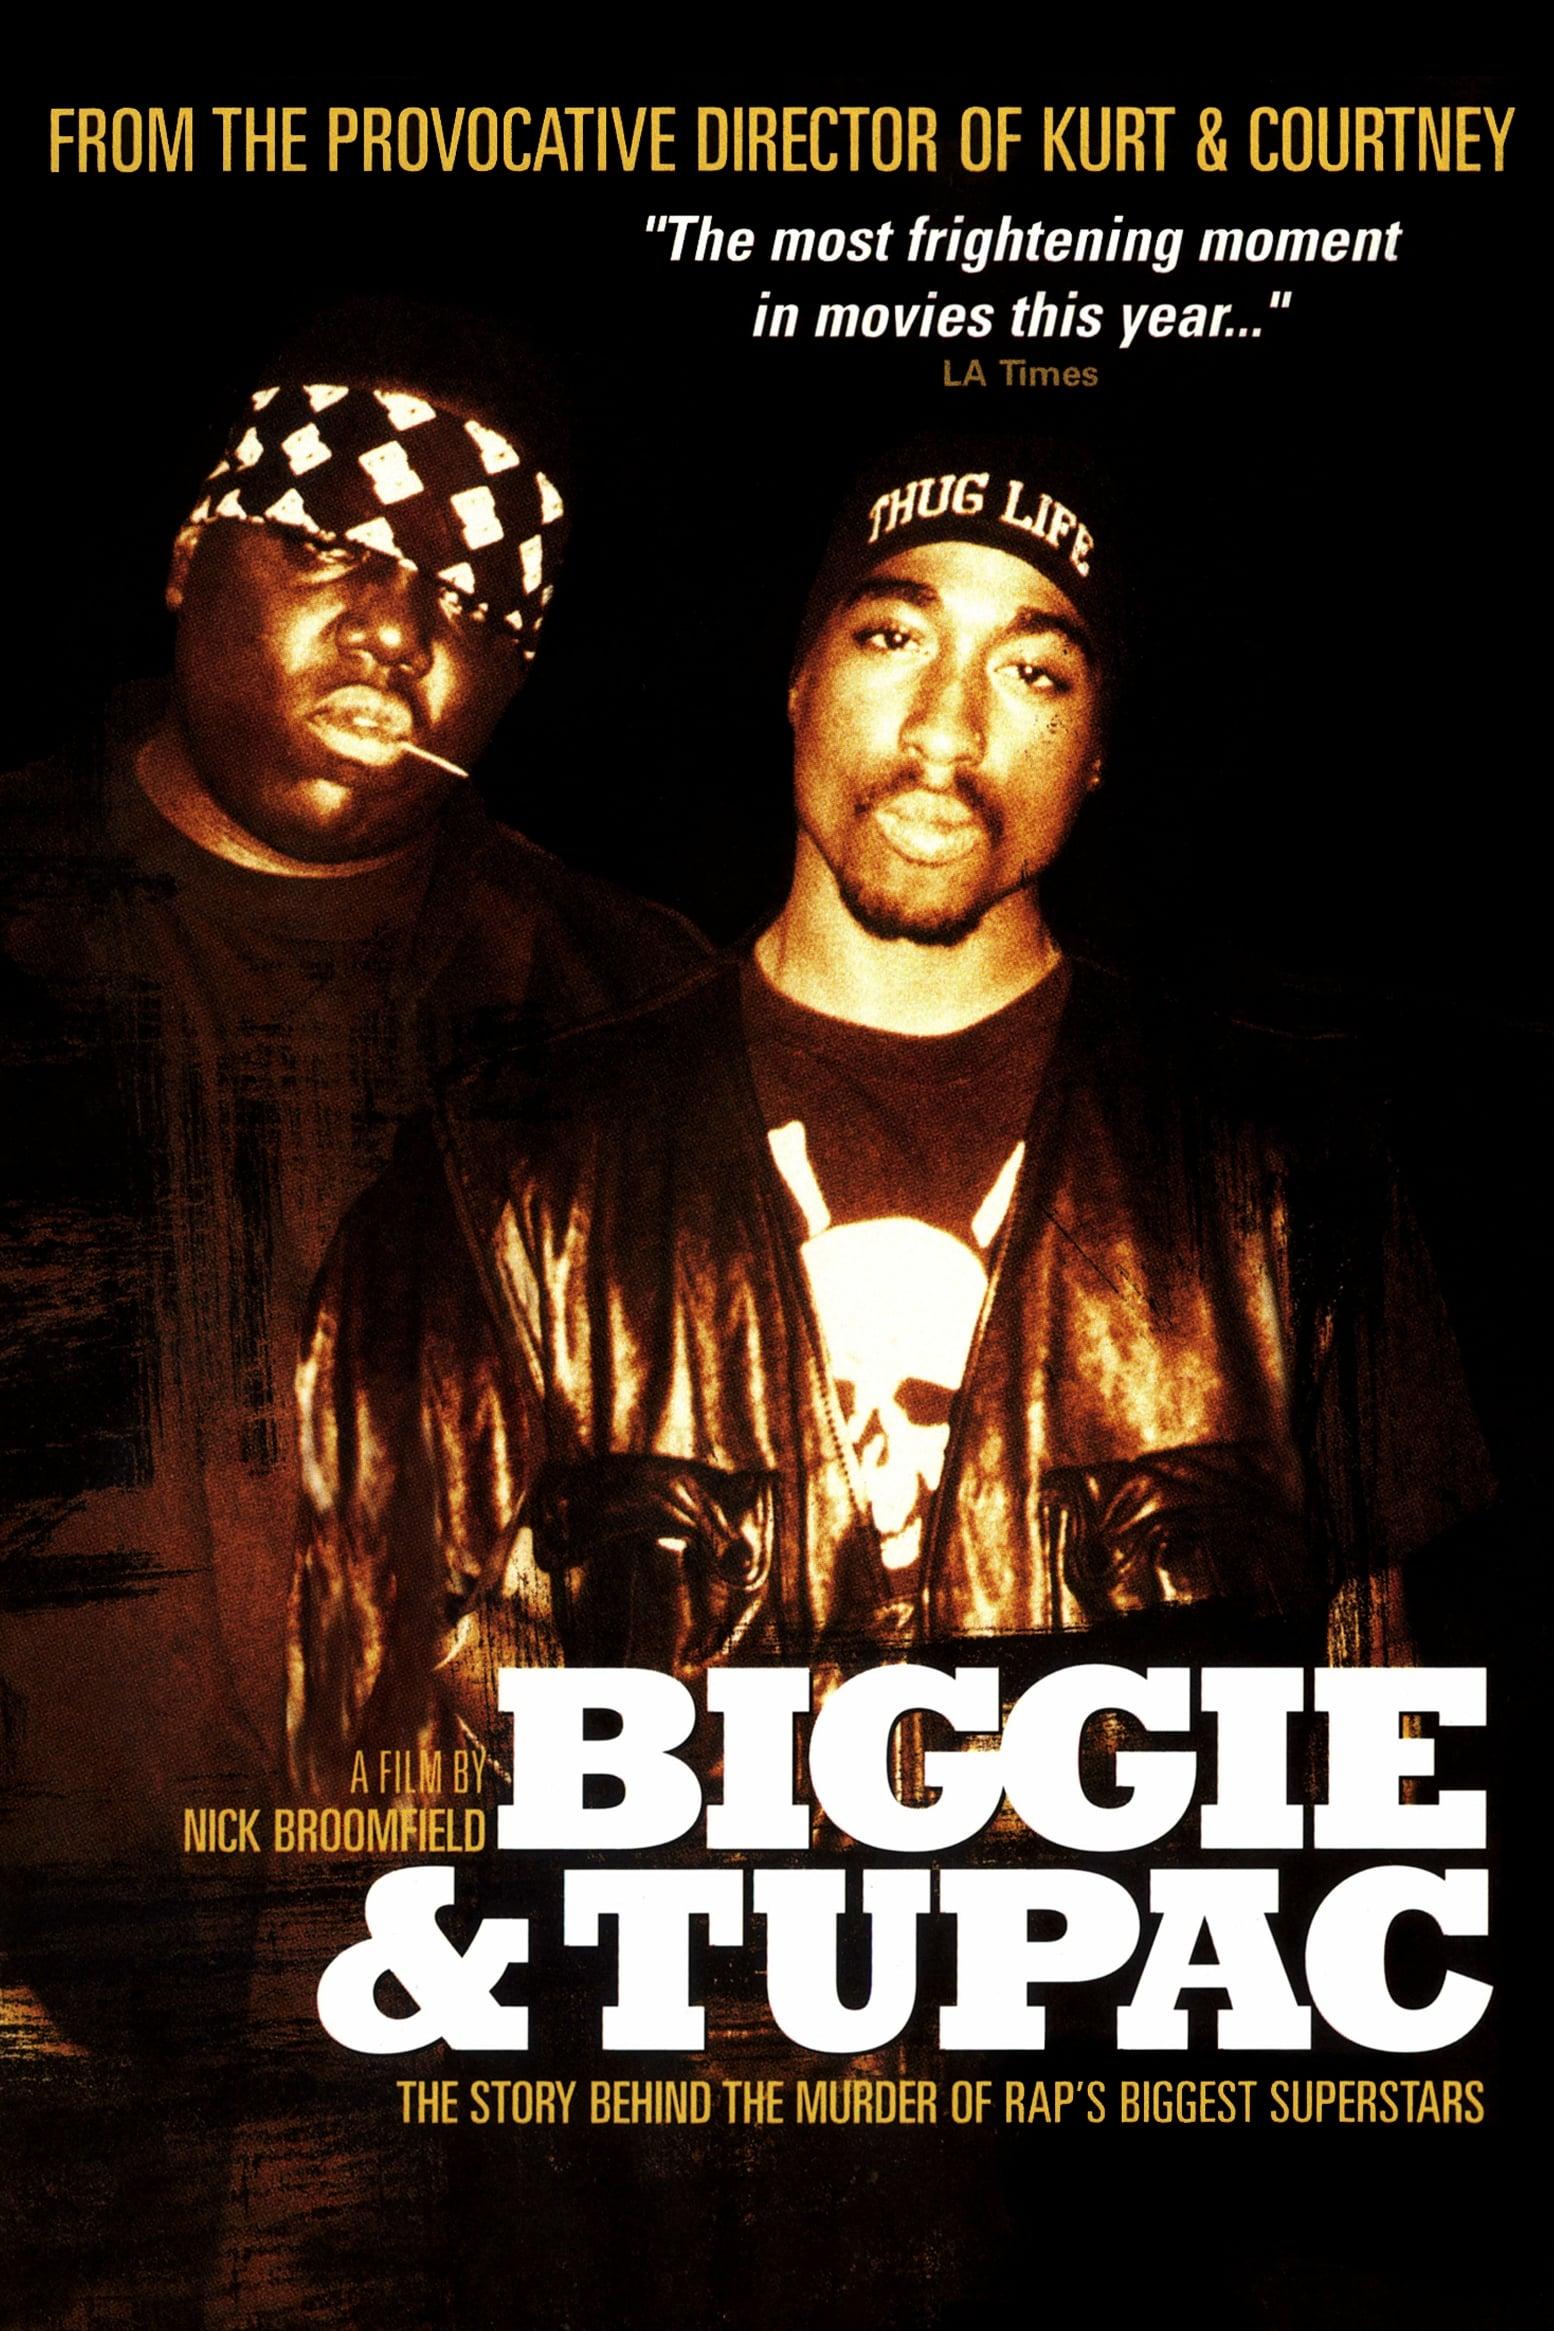 Biggie & Tupac poster